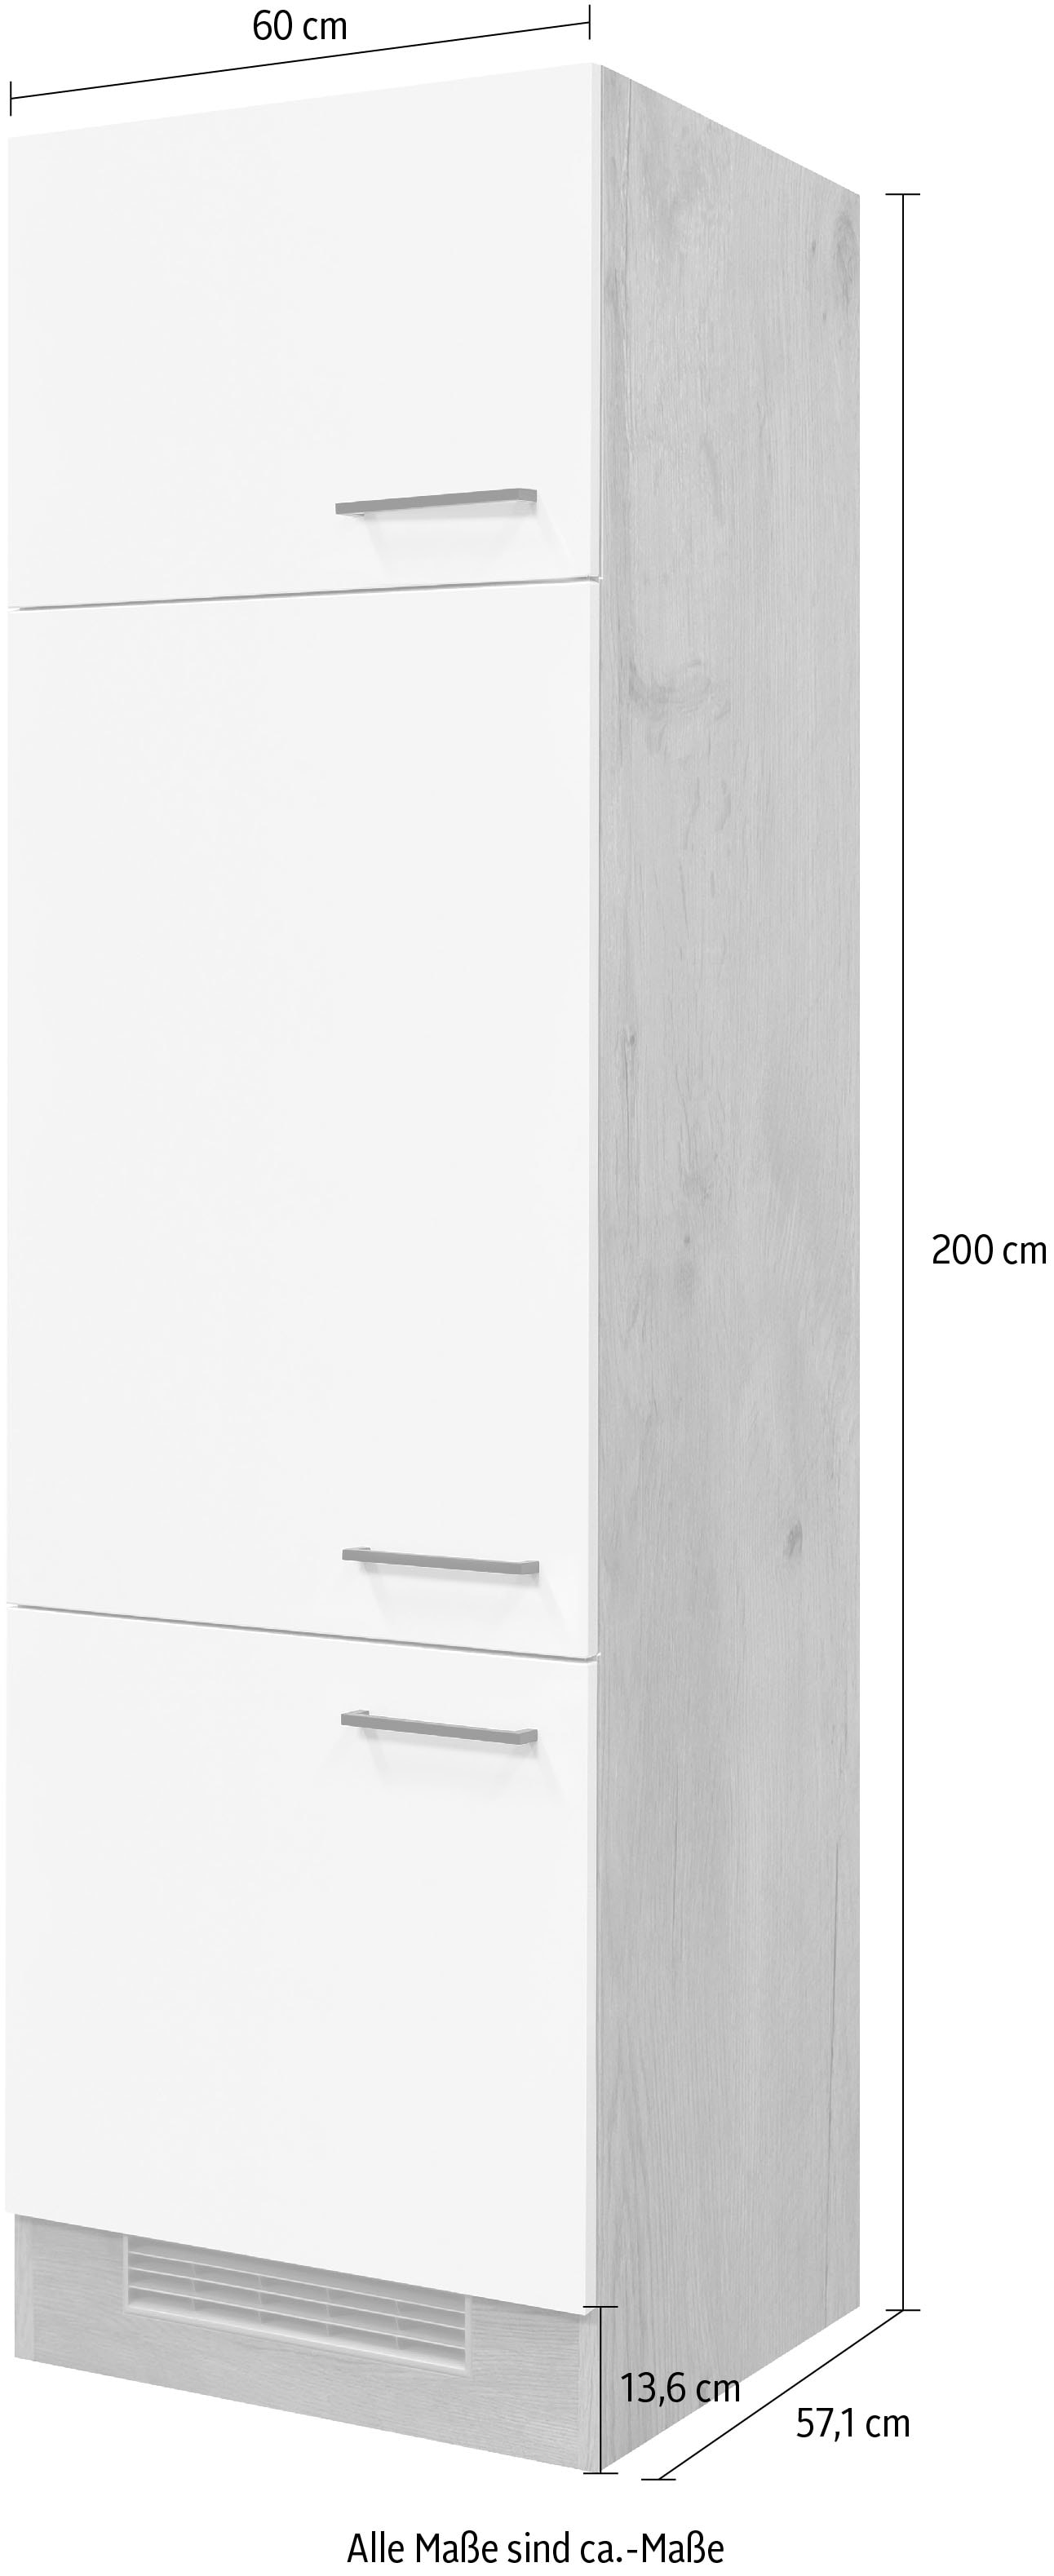 Flex-Well Küche »Morena«, 60 cm breit, 200 cm hoch, inklusive Kühlschrank